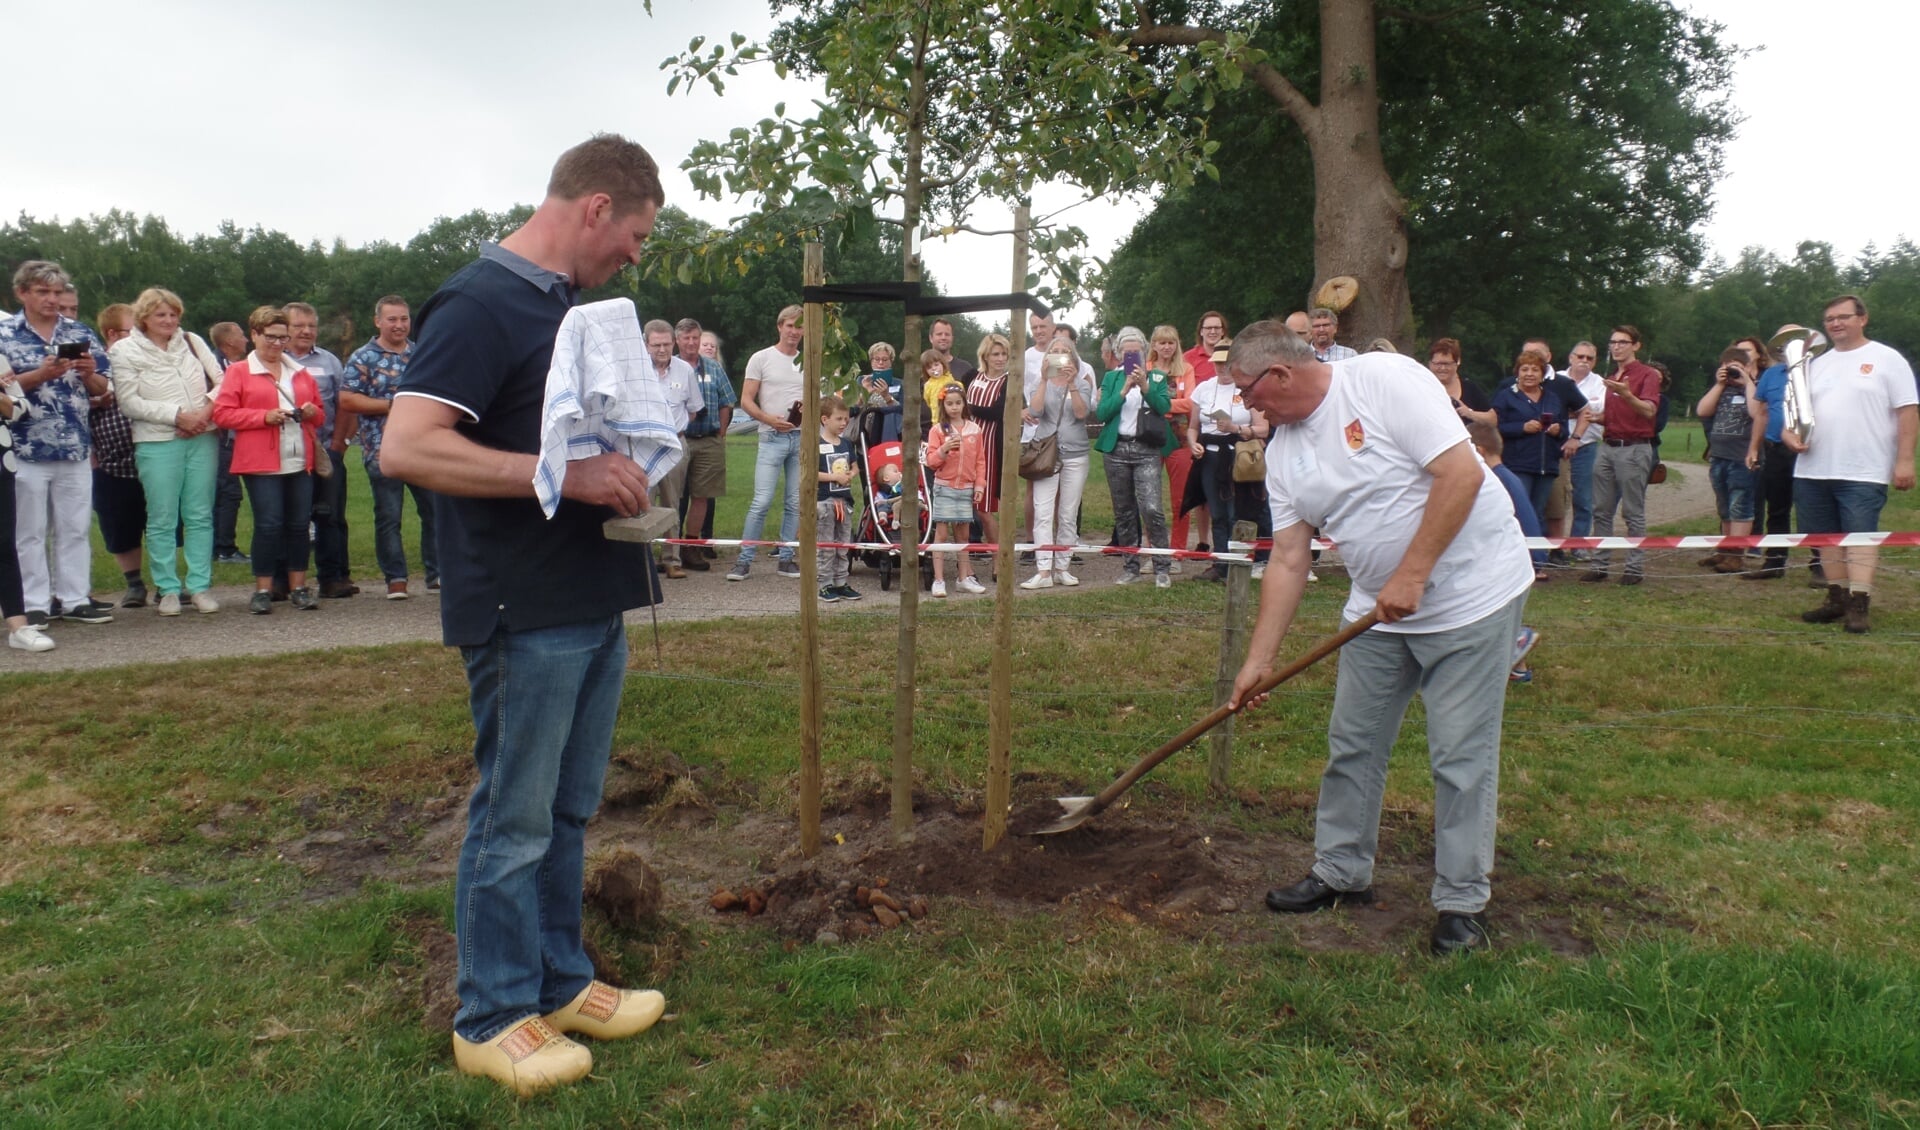 Als blijvende herinnering aan de familiereünie werd er door Jan Lievestro en Bert ten Arve een appelboom op het erf van de boerderij geplant met op de plaquette de tekst 'Lievestro Reünie 300 jaar 2-6-2018'. Foto: Jan Hendriksen. 